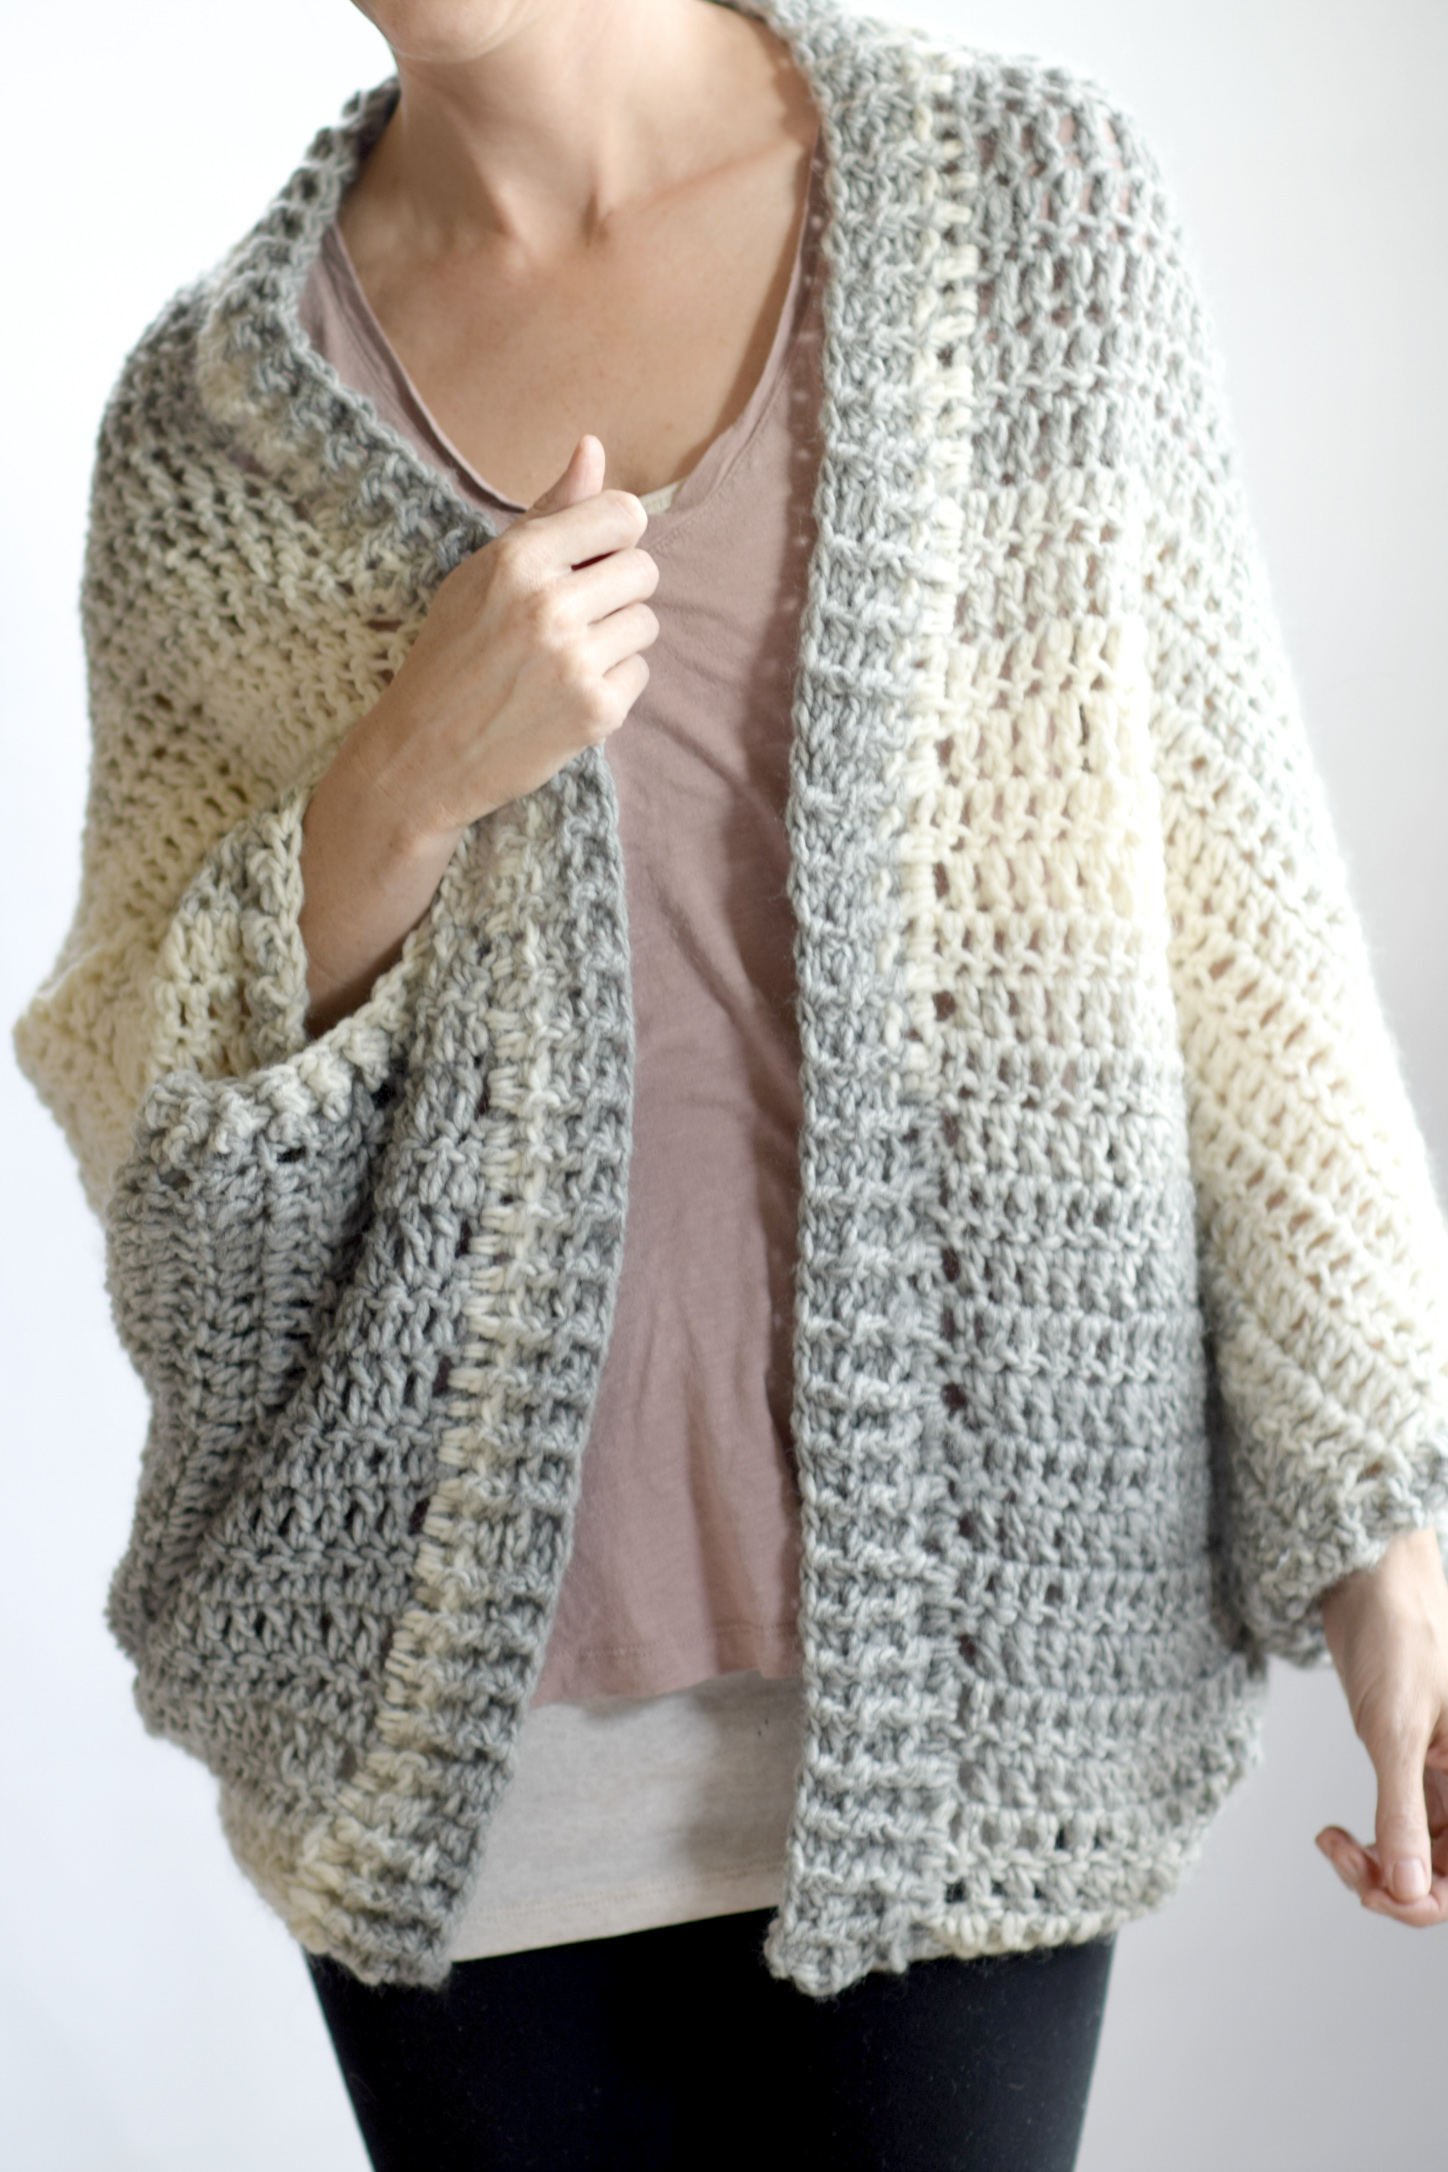 Crochet Pattern For A Shrug